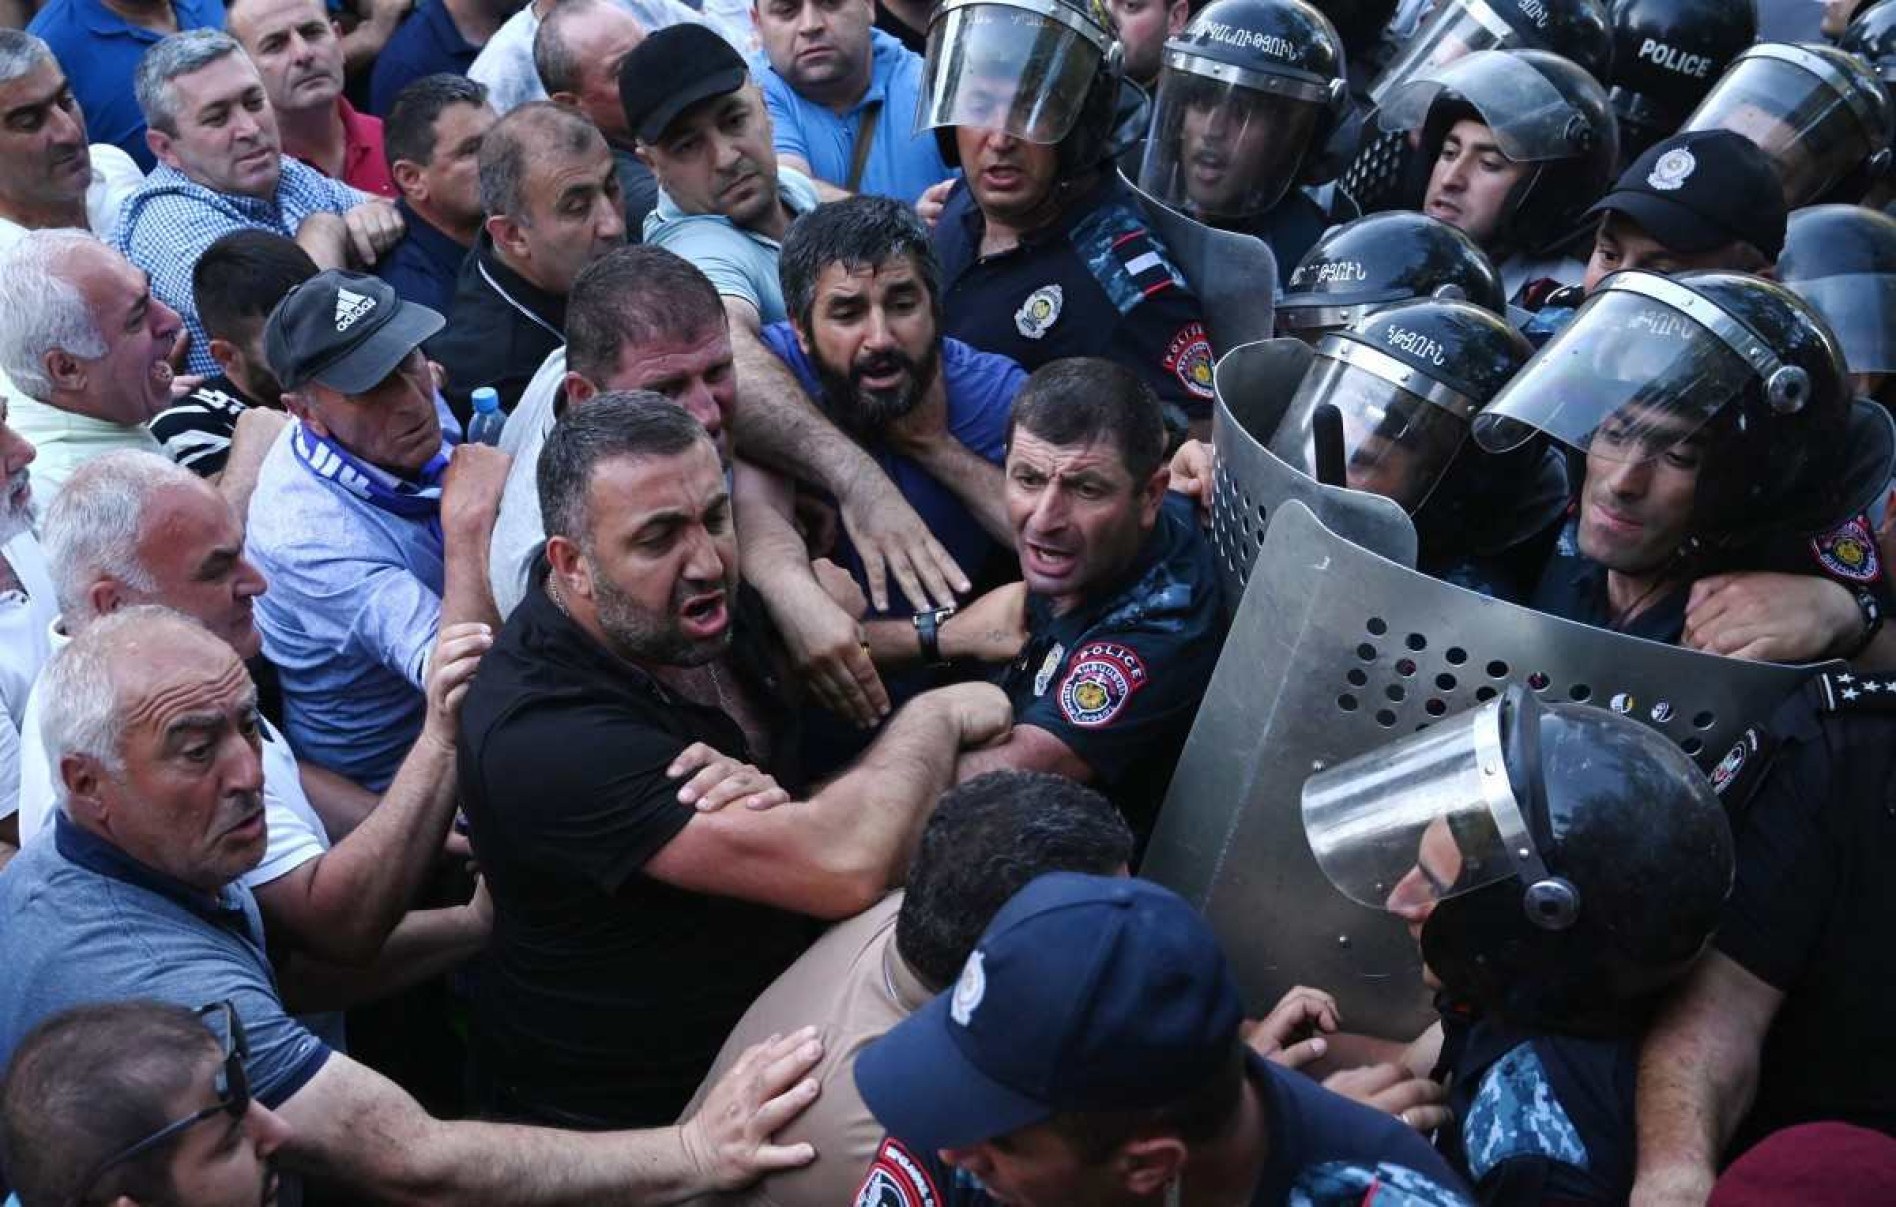 Protesto contra governo deixa dezenas de feridos na Armênia